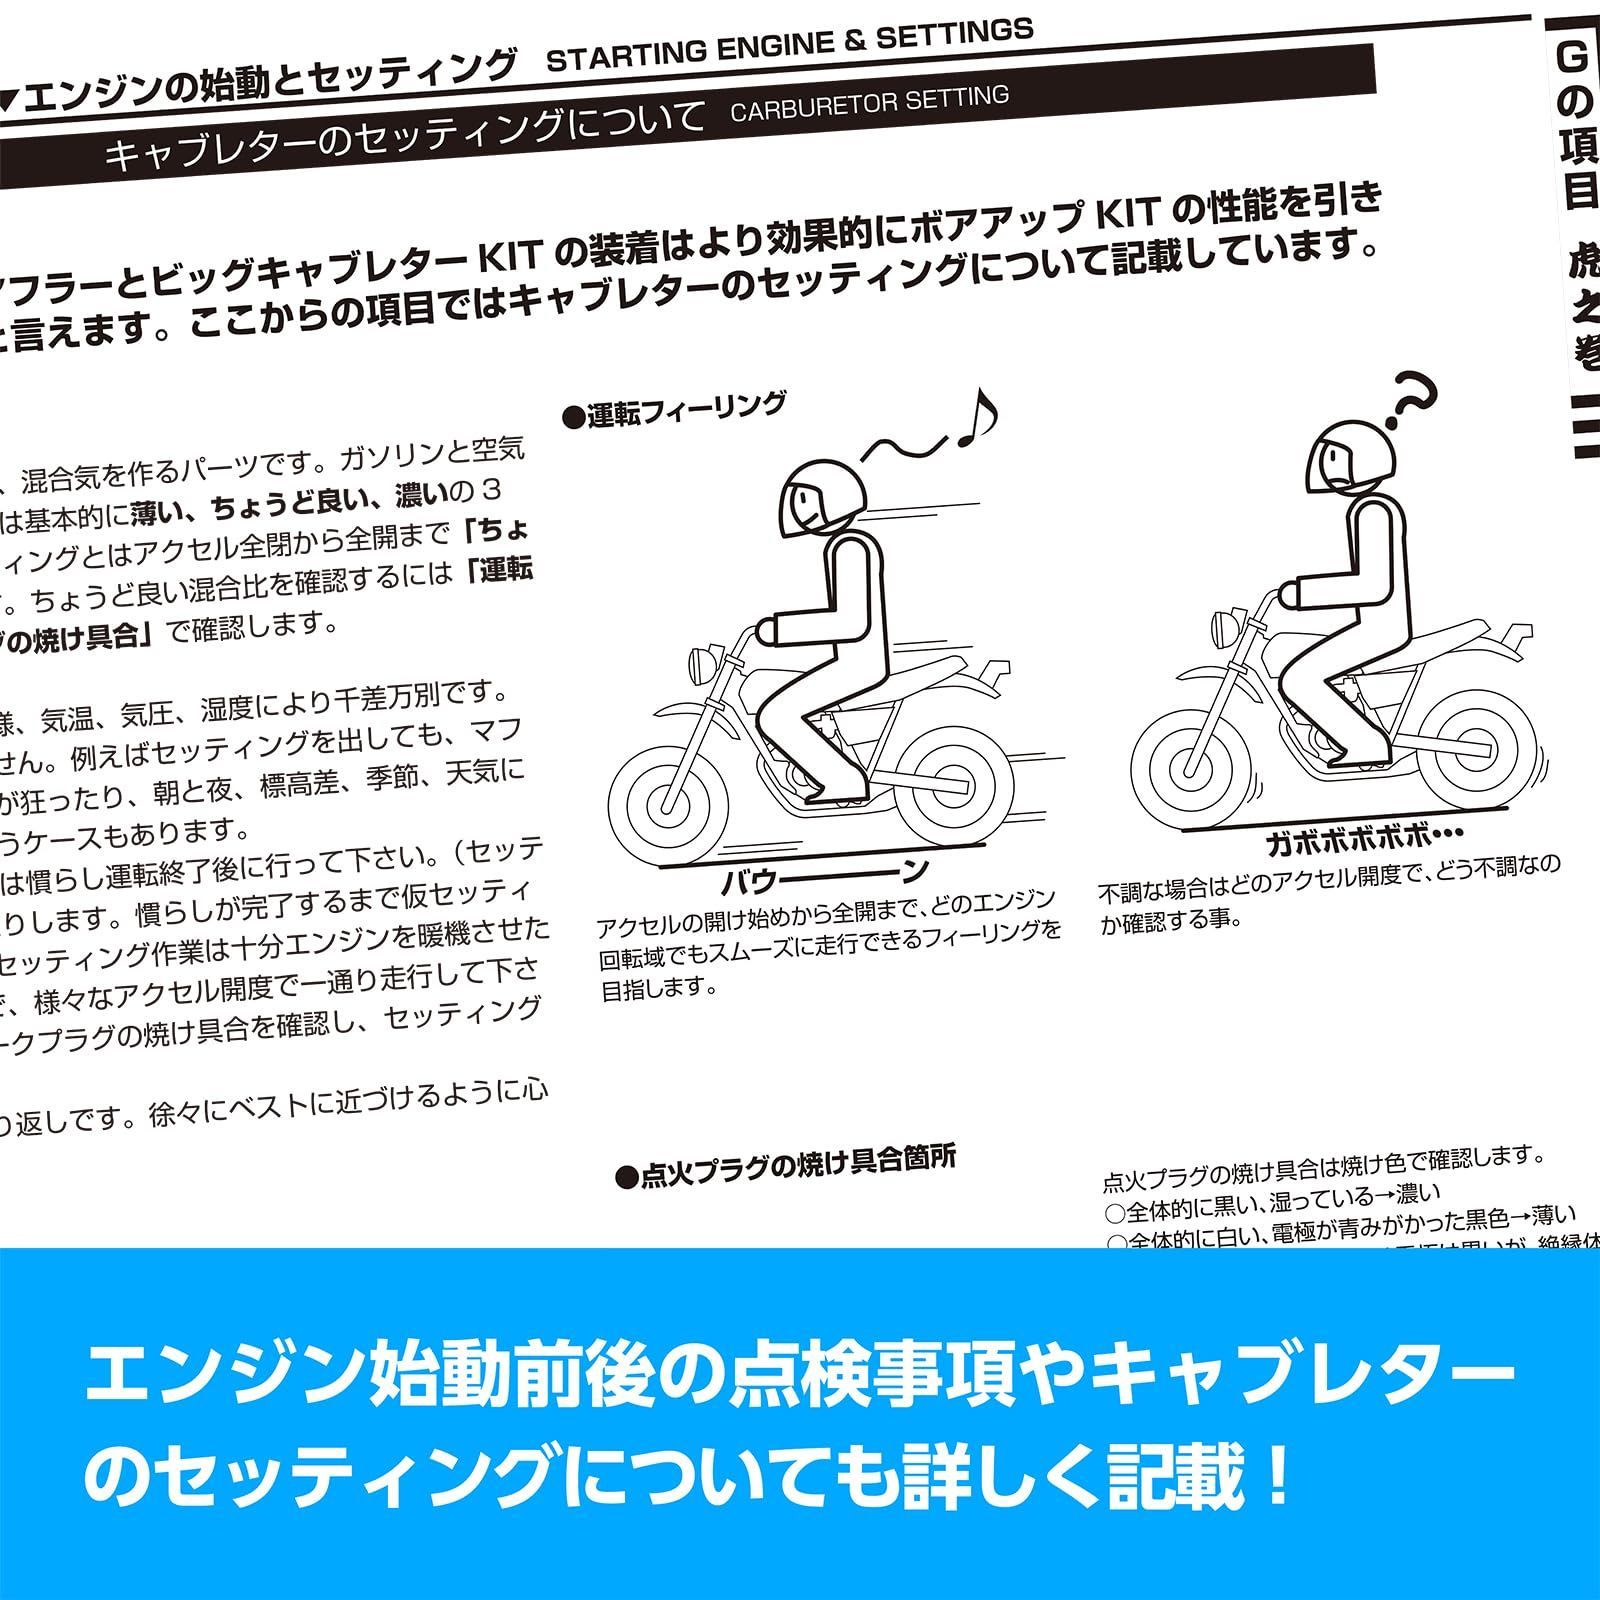 【新着商品】キタコ(KITACO) ボアアップキットの組み付け方 虎の巻 腰上編 エイプ系縦型エンジン 00-0901001